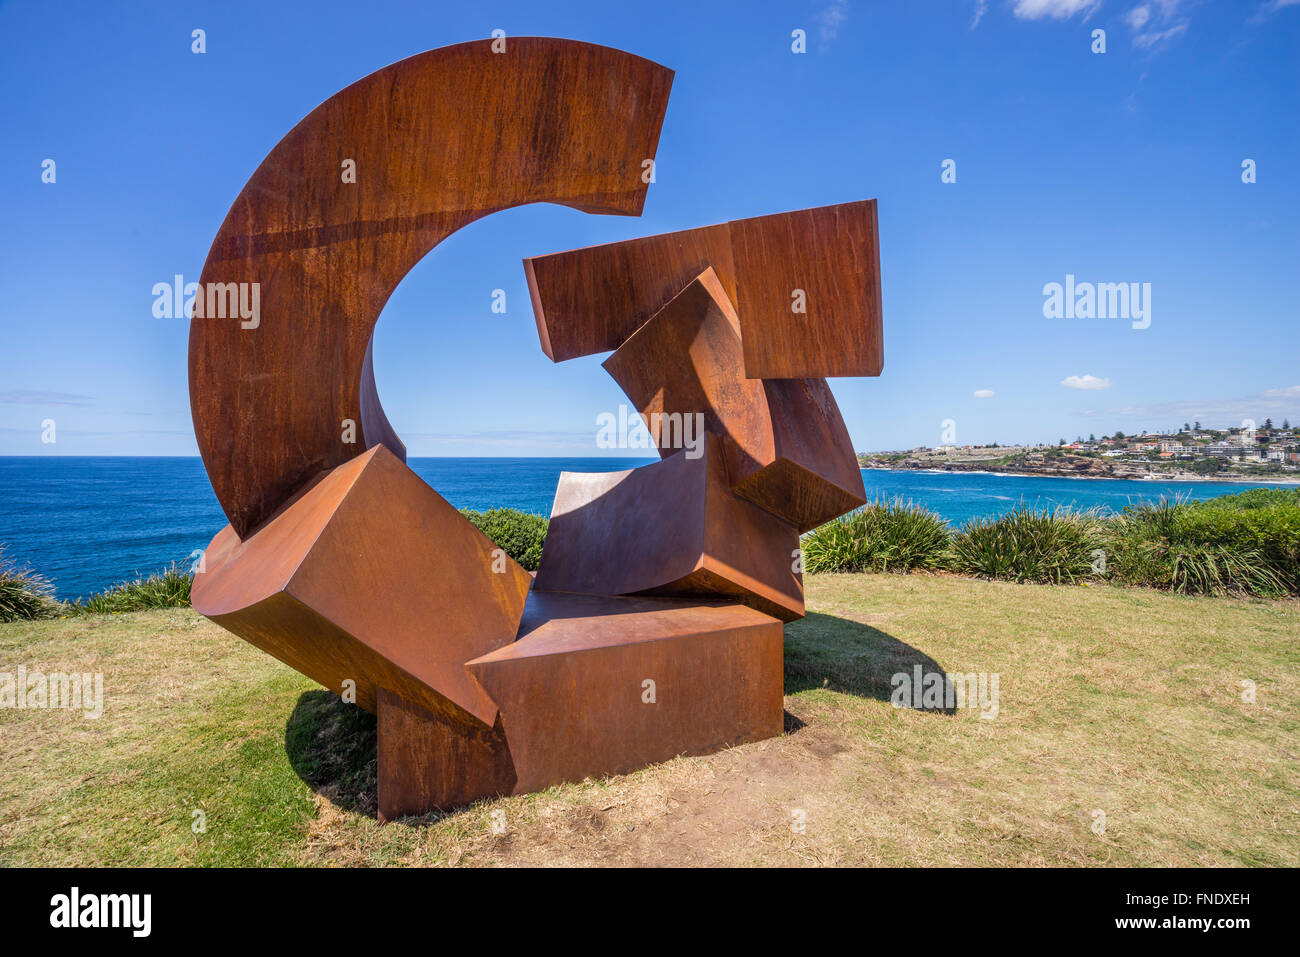 Sculpture de la mer 2015, exposition d'art annuelle open air le long de la promenade côtière entre Tamarama et Bondi, Sydney, Australie Banque D'Images